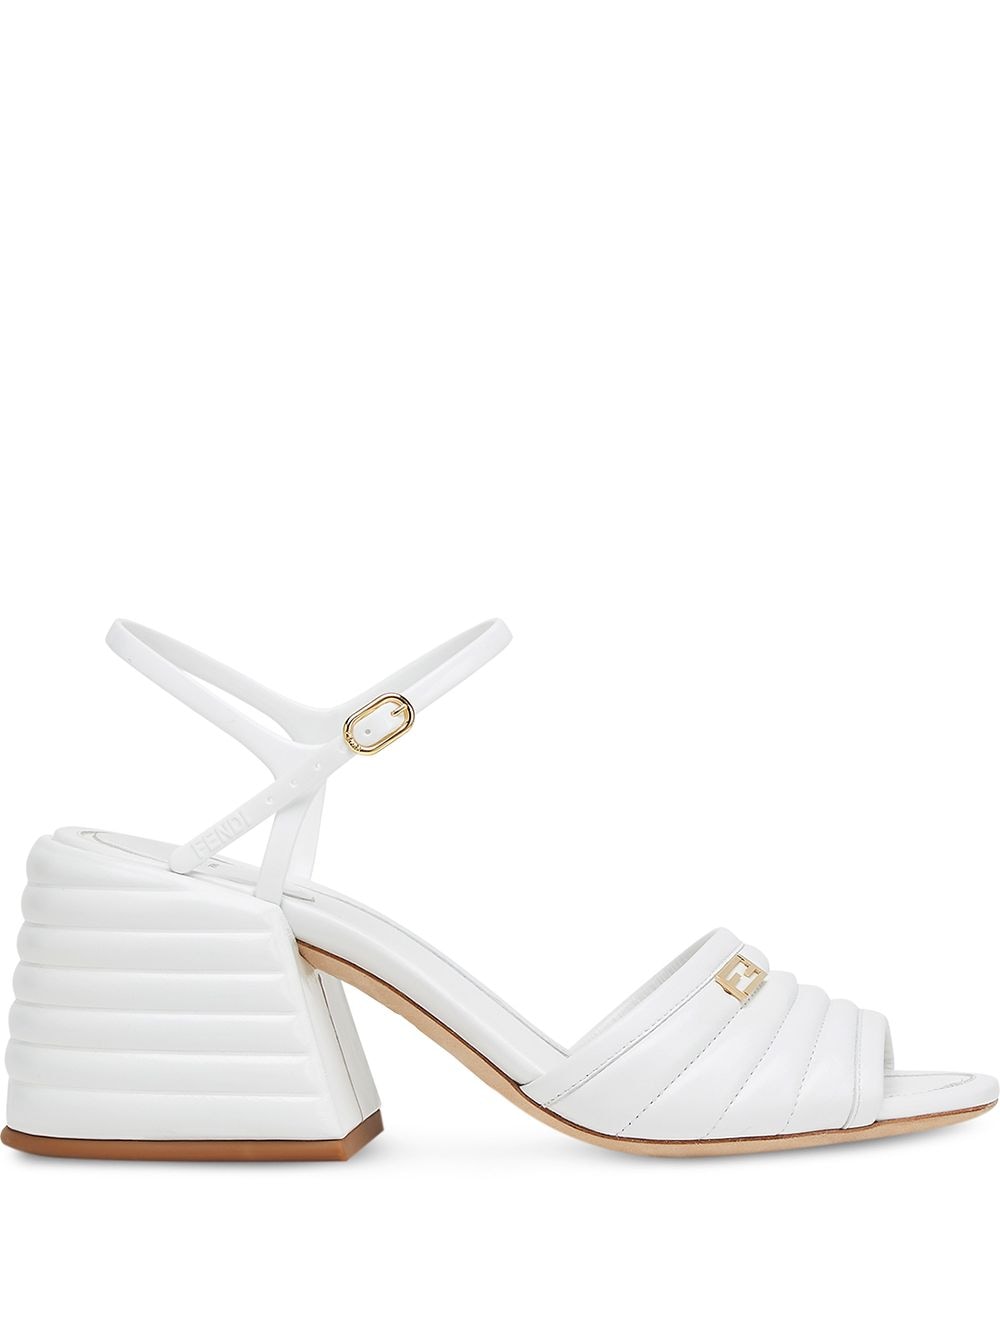 white slingback sandals